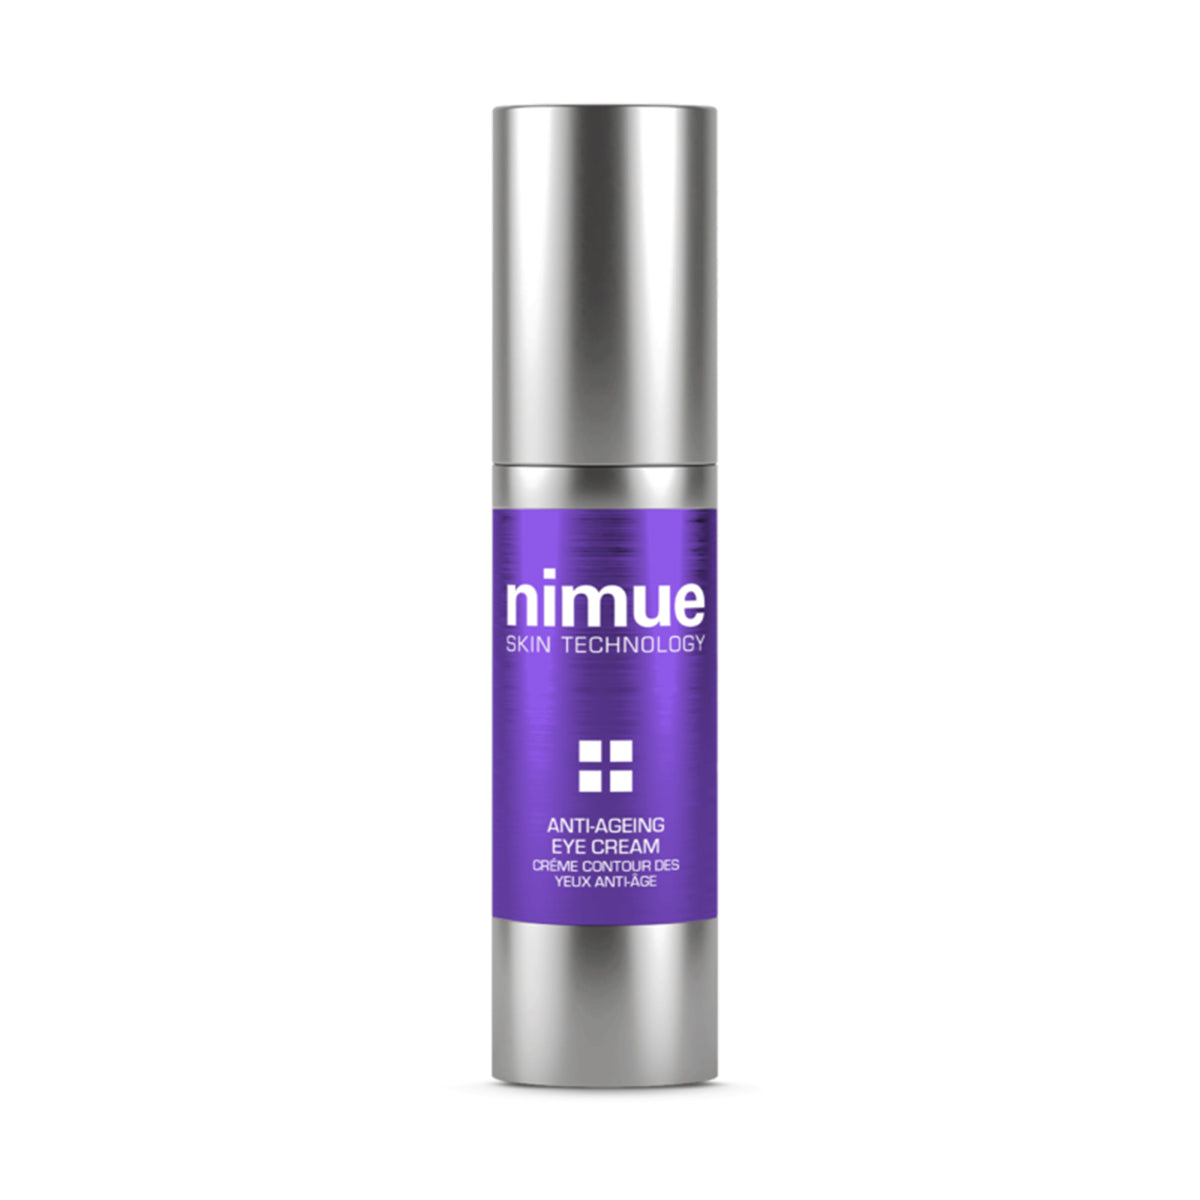 Nimue- Anti-Ageing Eye Cream - The Laser Beautique